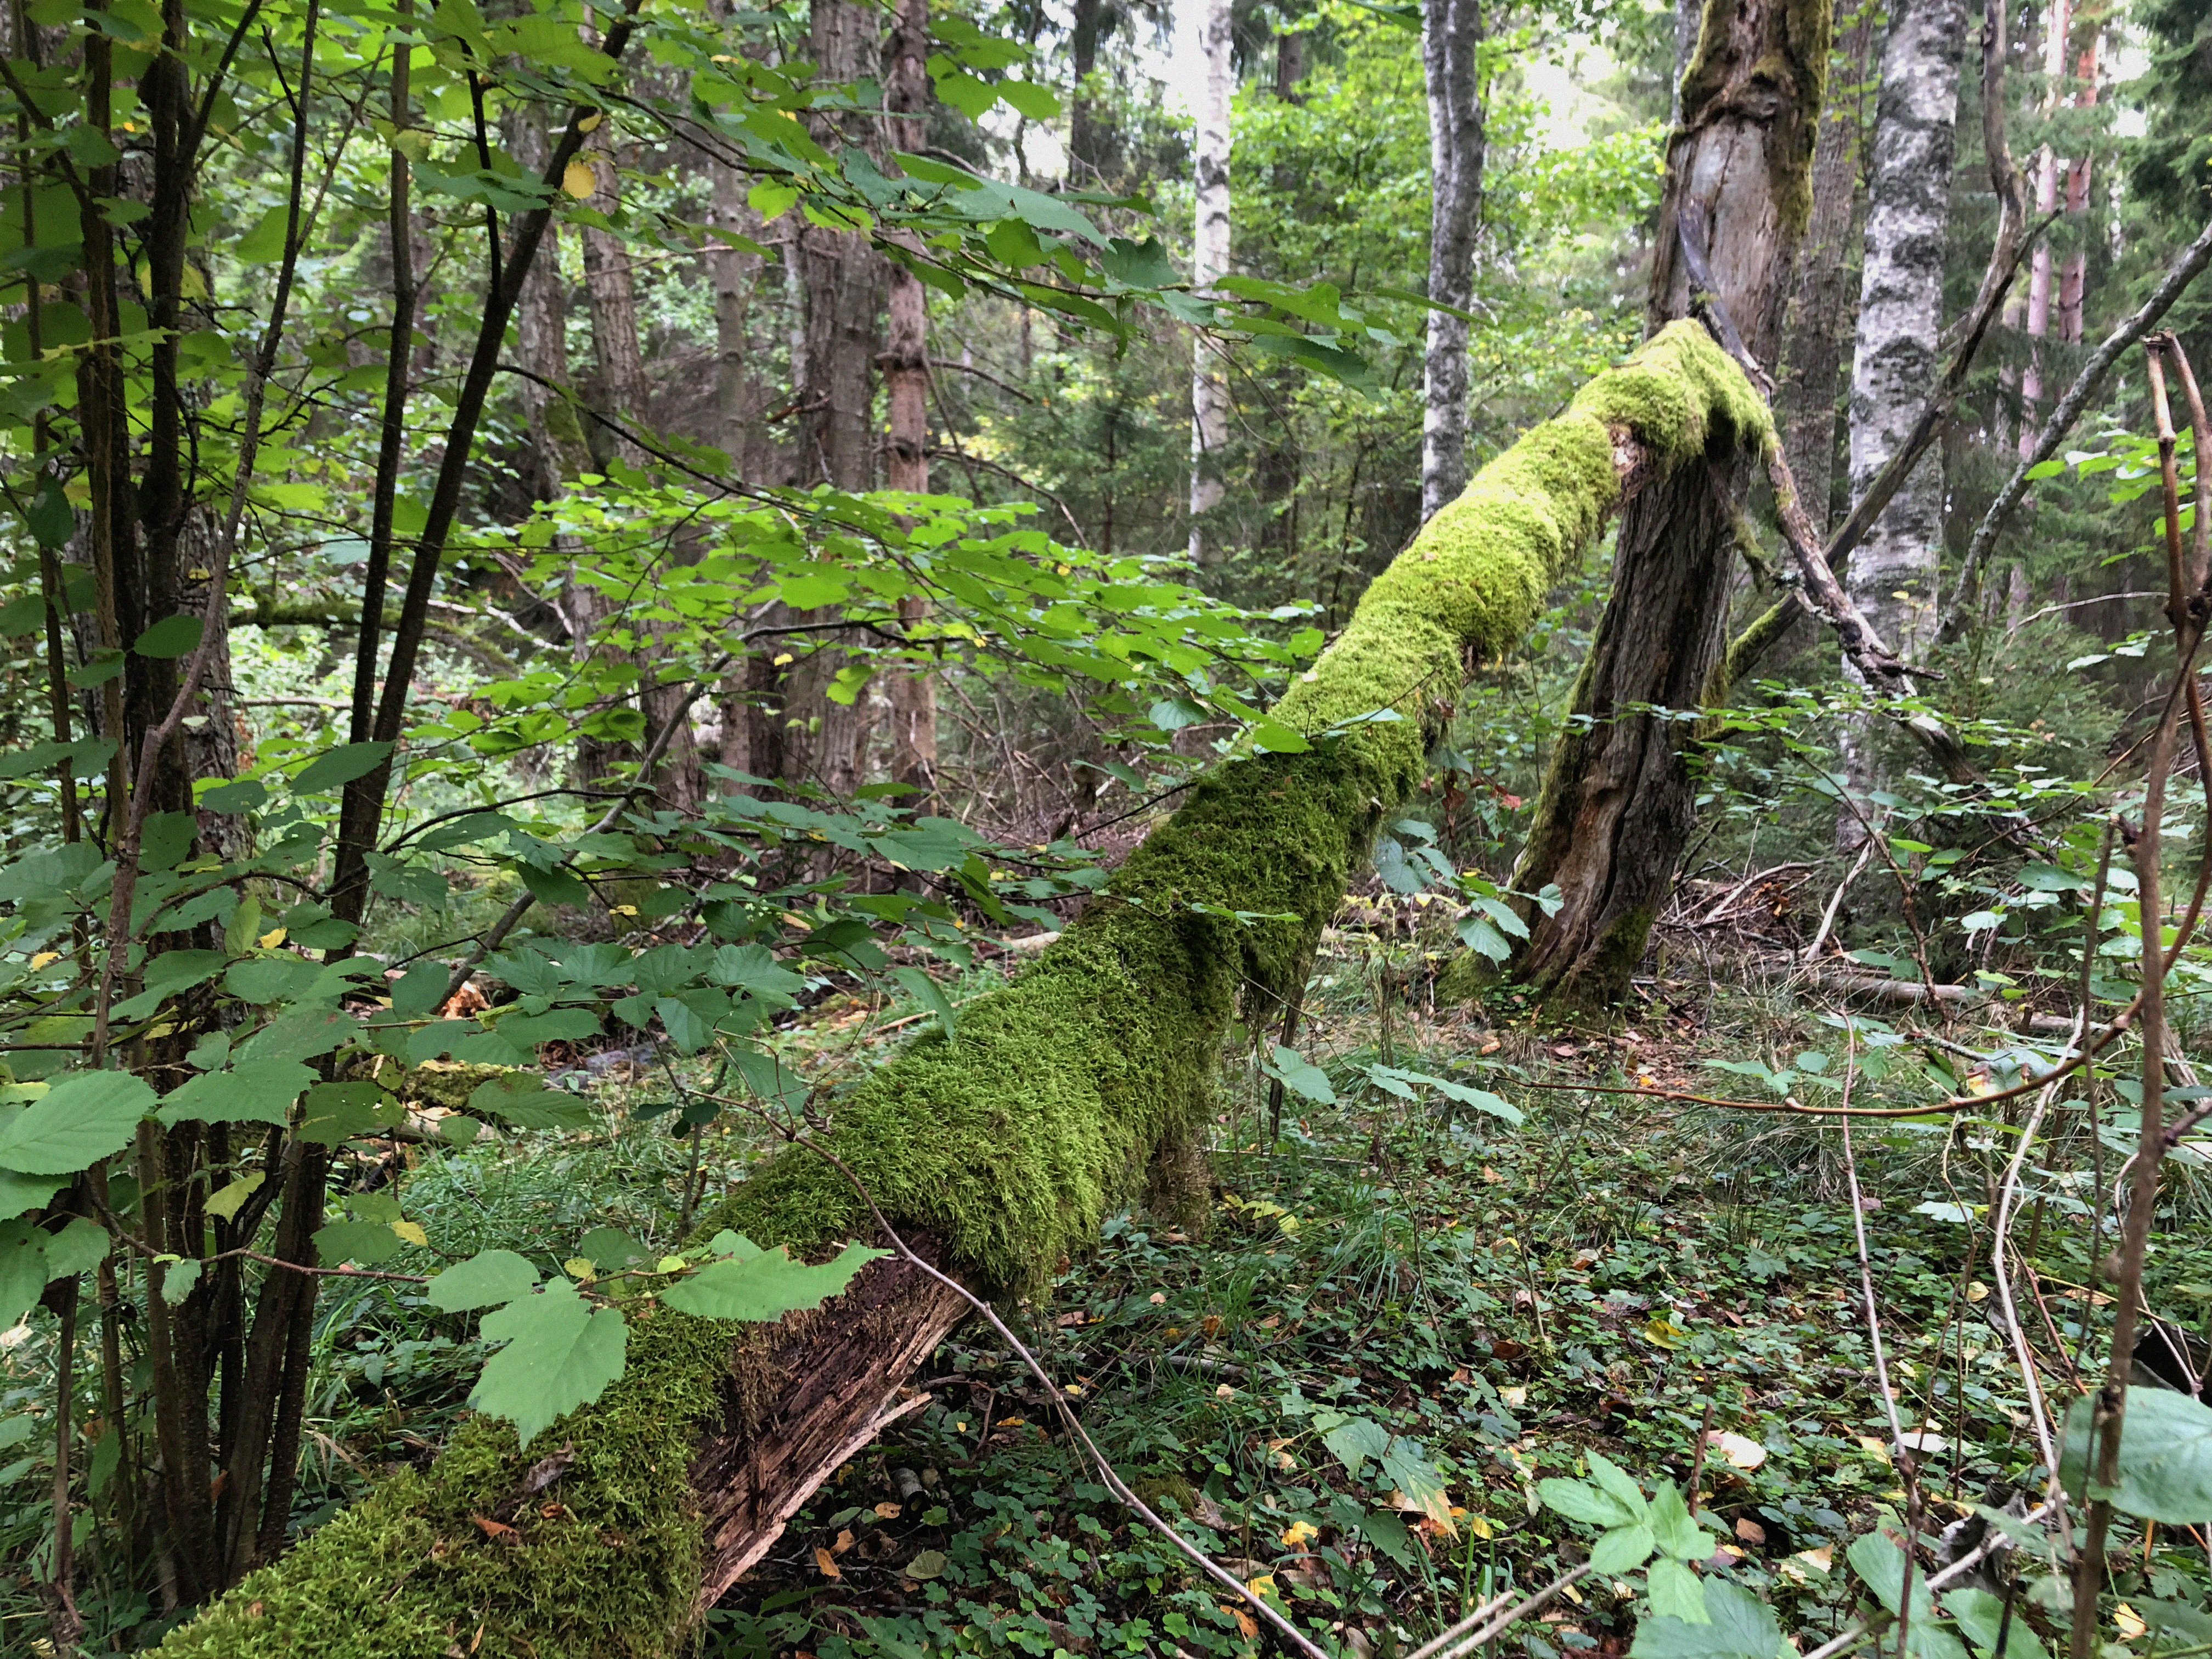 Mossbeklätt dött träd som fallit i skogen.